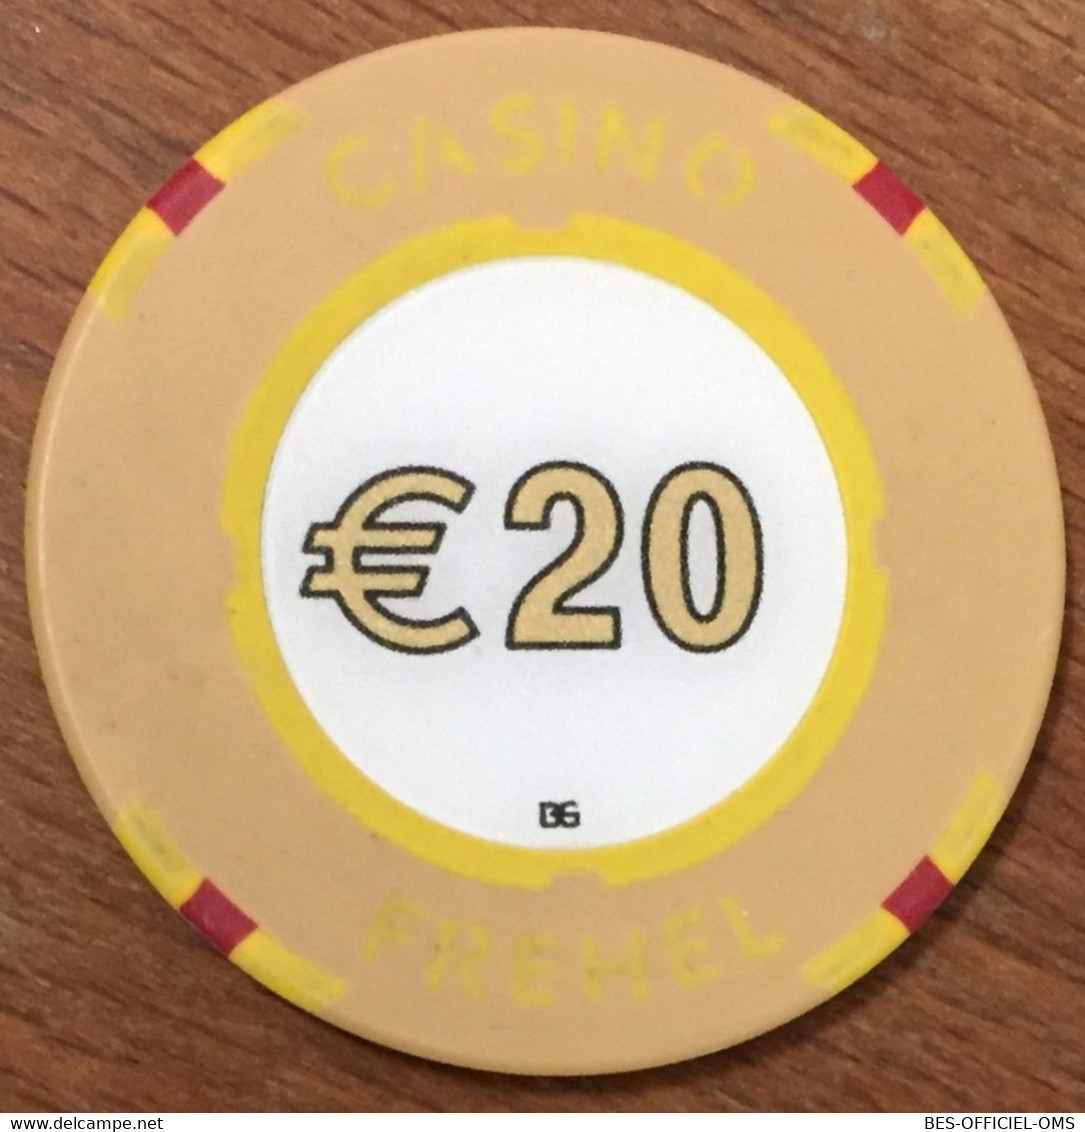 22 FREHEL CASINO JETON DE 20 EUROS CHIP COINS TOKENS GAMING - Casino